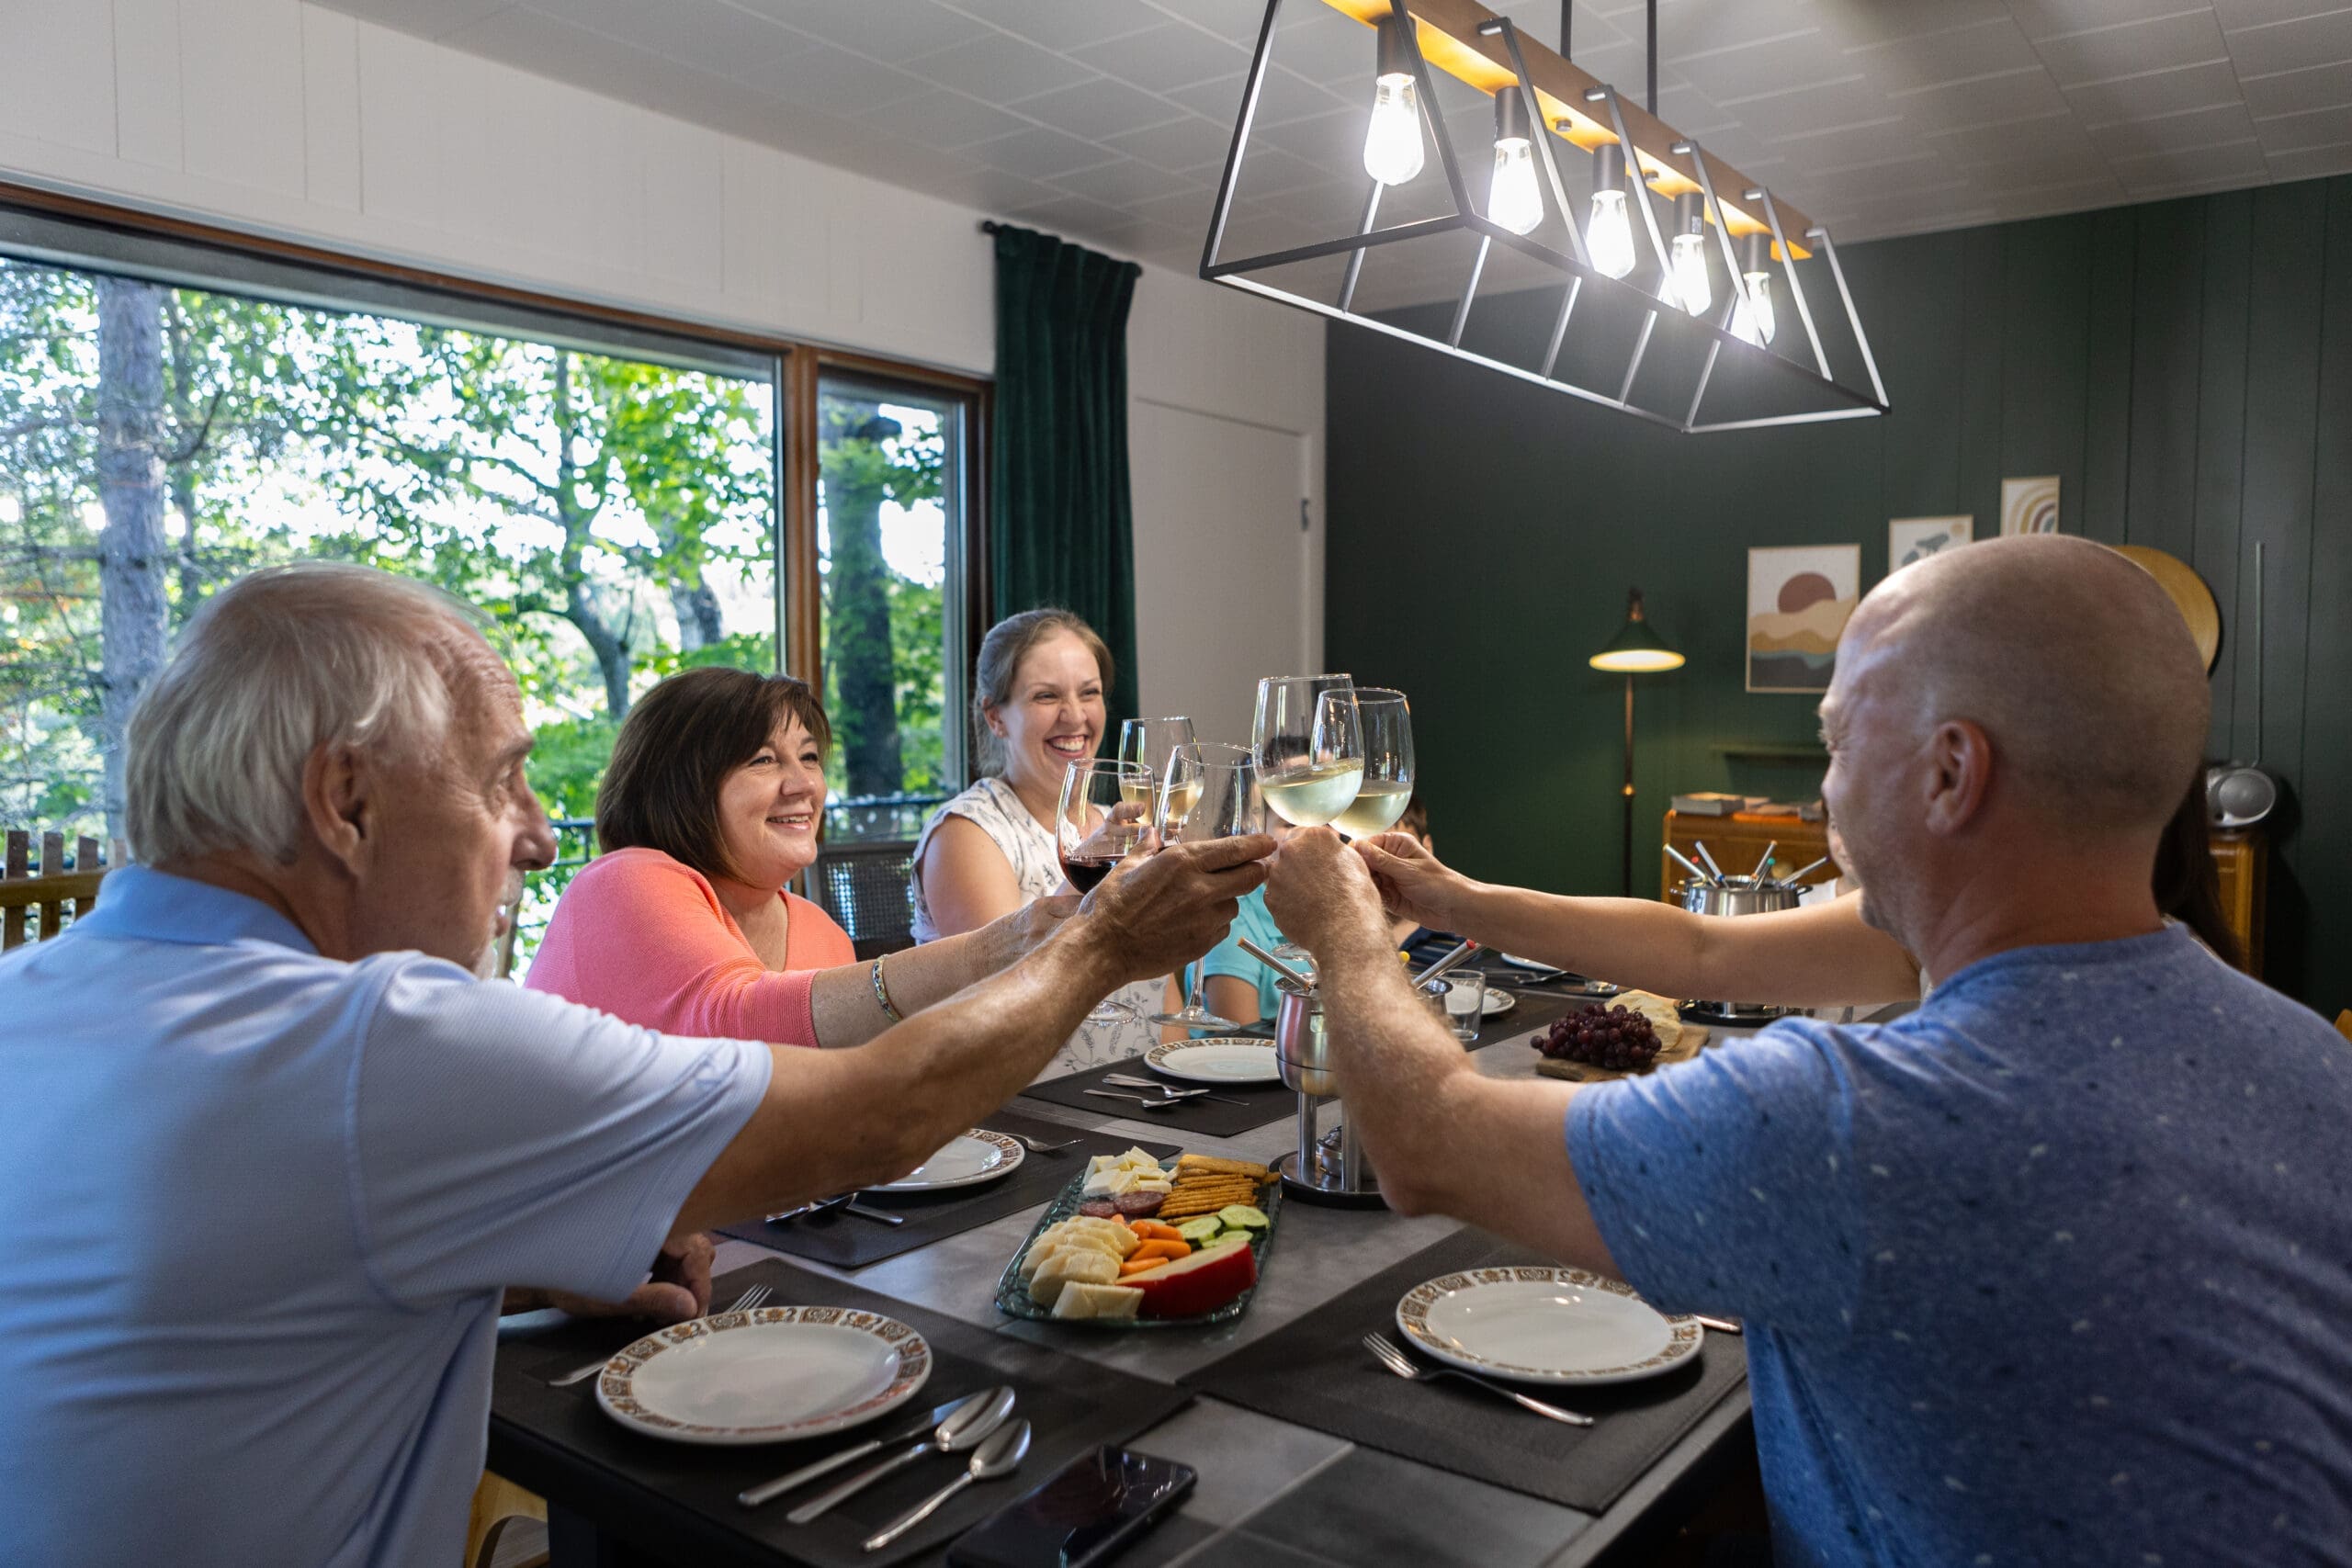 Quatre adultes trinquant joyeusement avec des verres à vin à une table dans une pièce bien éclairée avec une fenêtre donnant sur la verdure à l'extérieur.